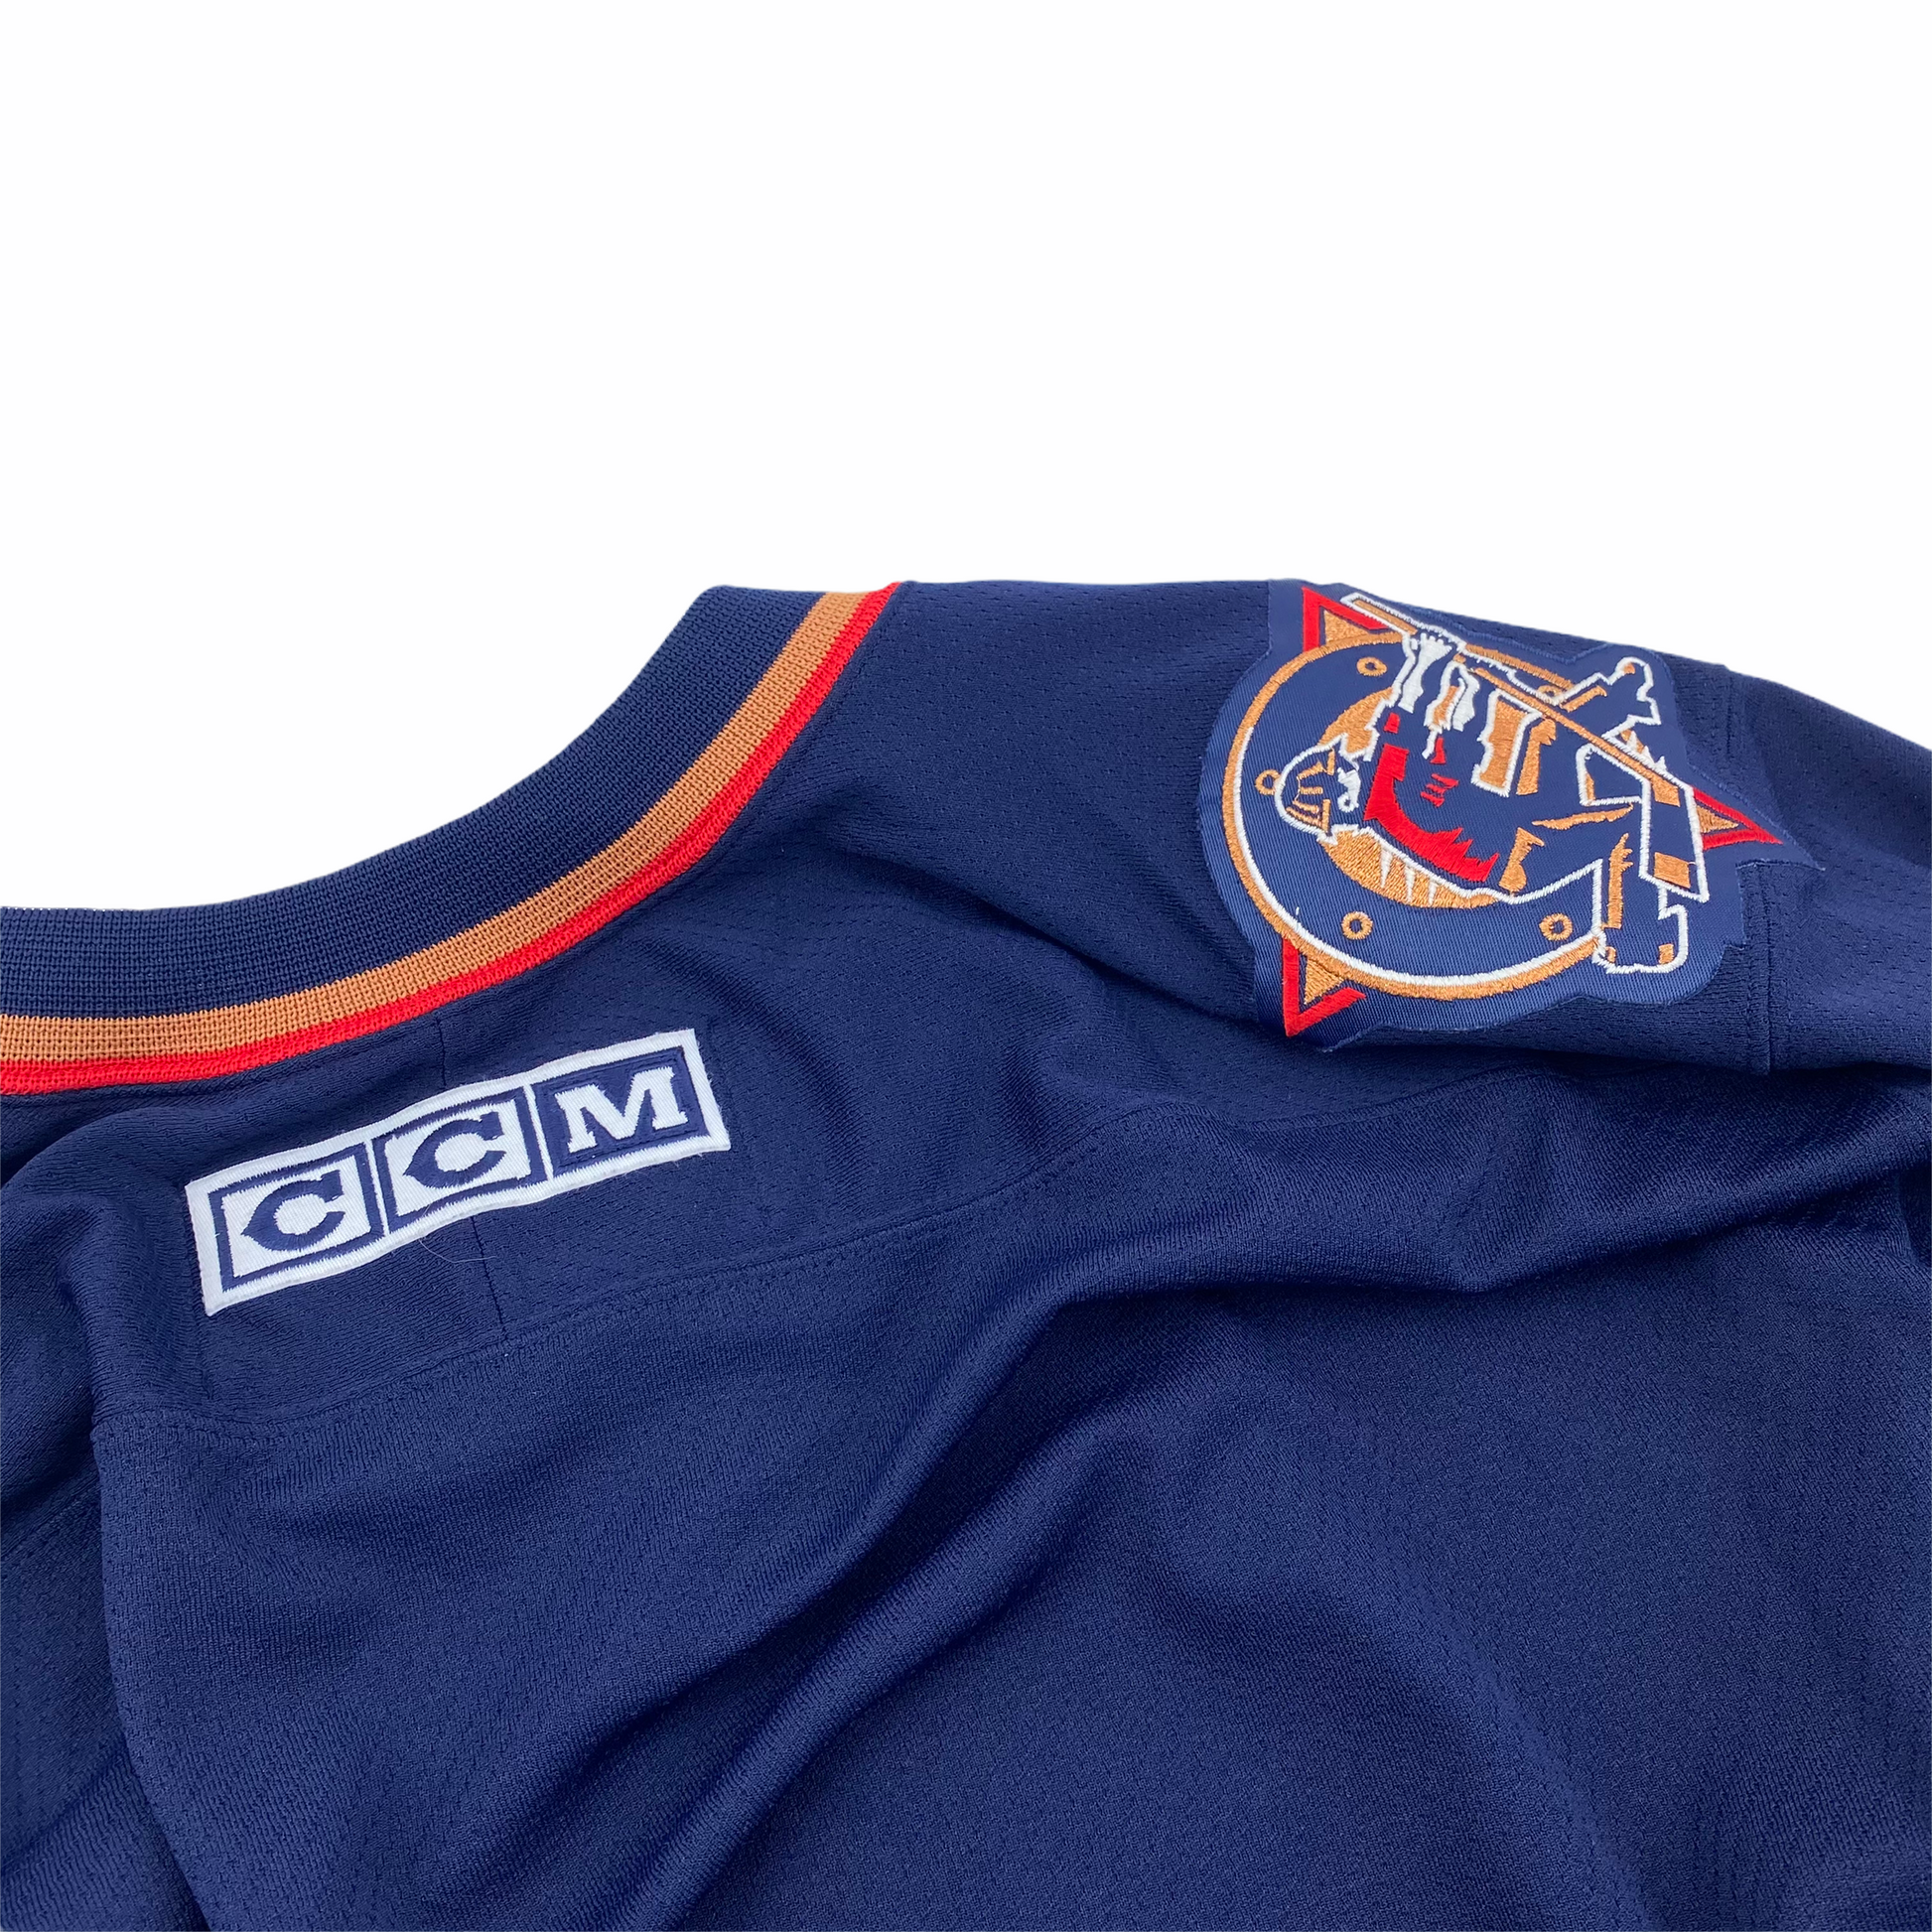 Edmonton Oilers Vintage CCM Jersey - L